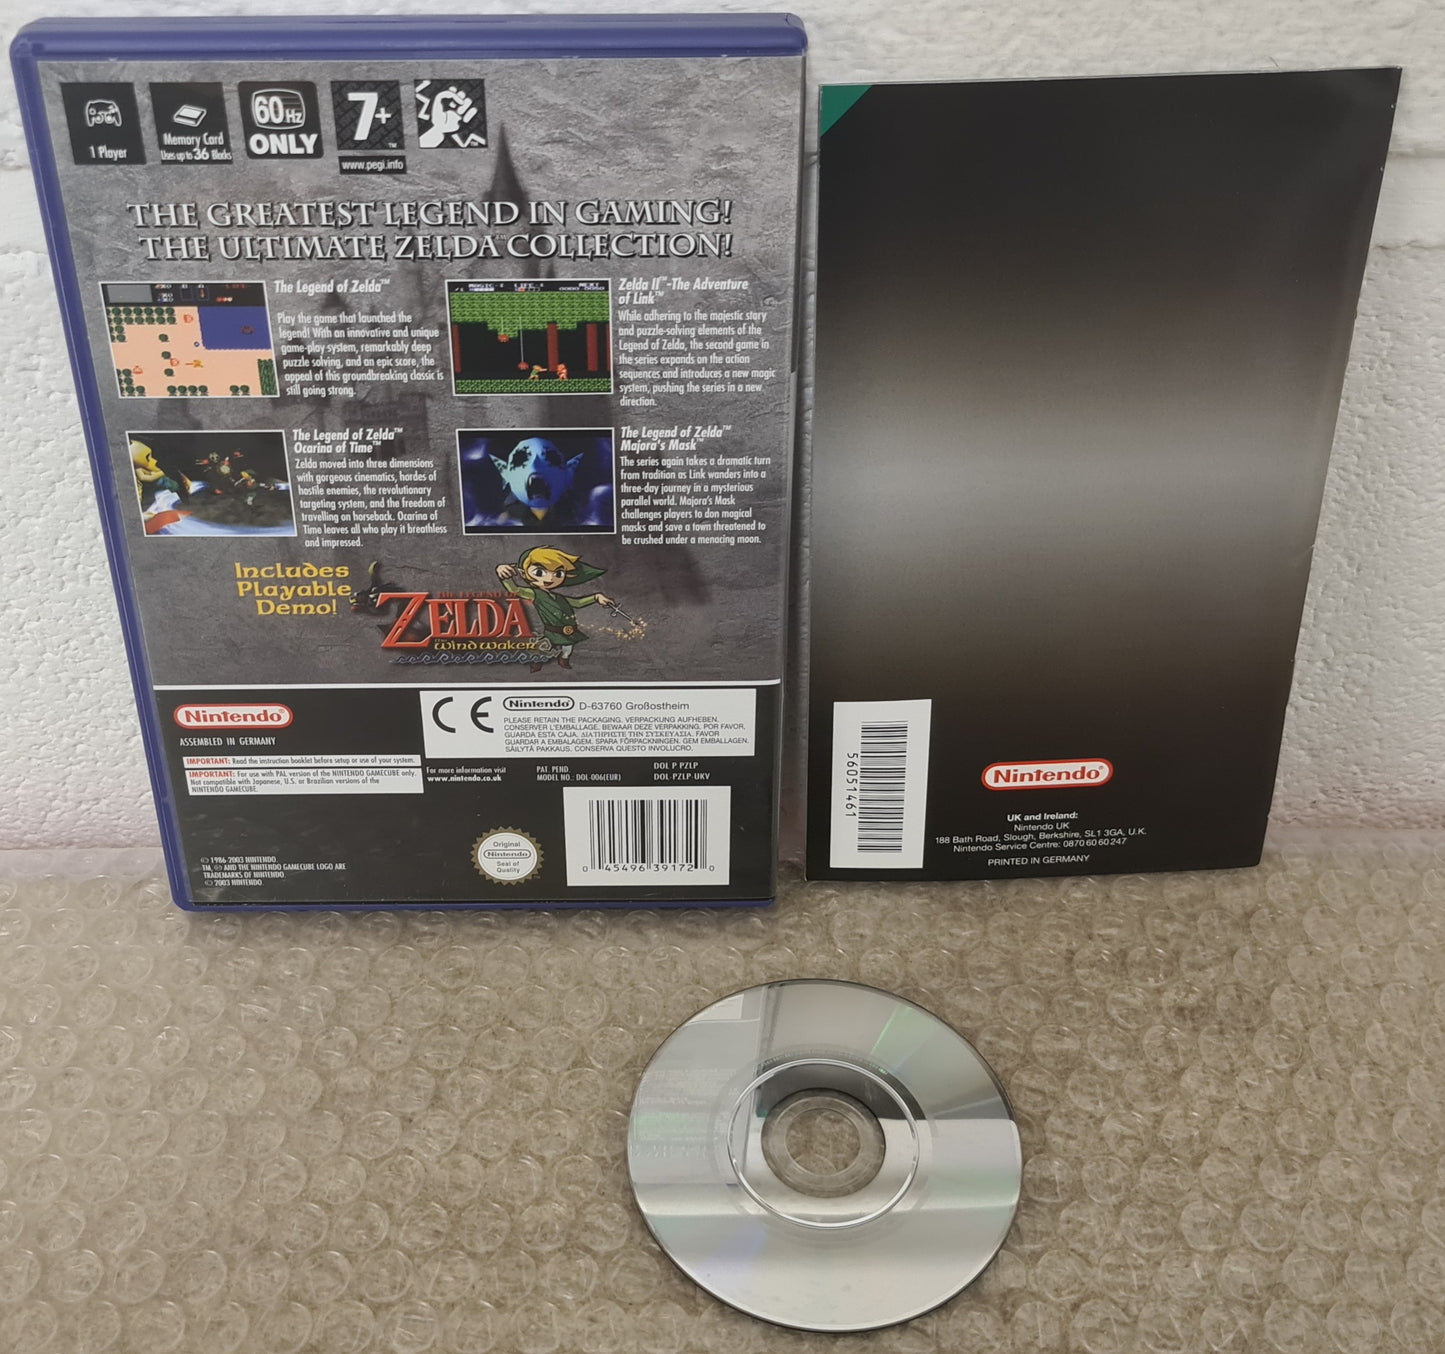 The Legend of Zelda Collectors Edition Nintendo GameCube Game